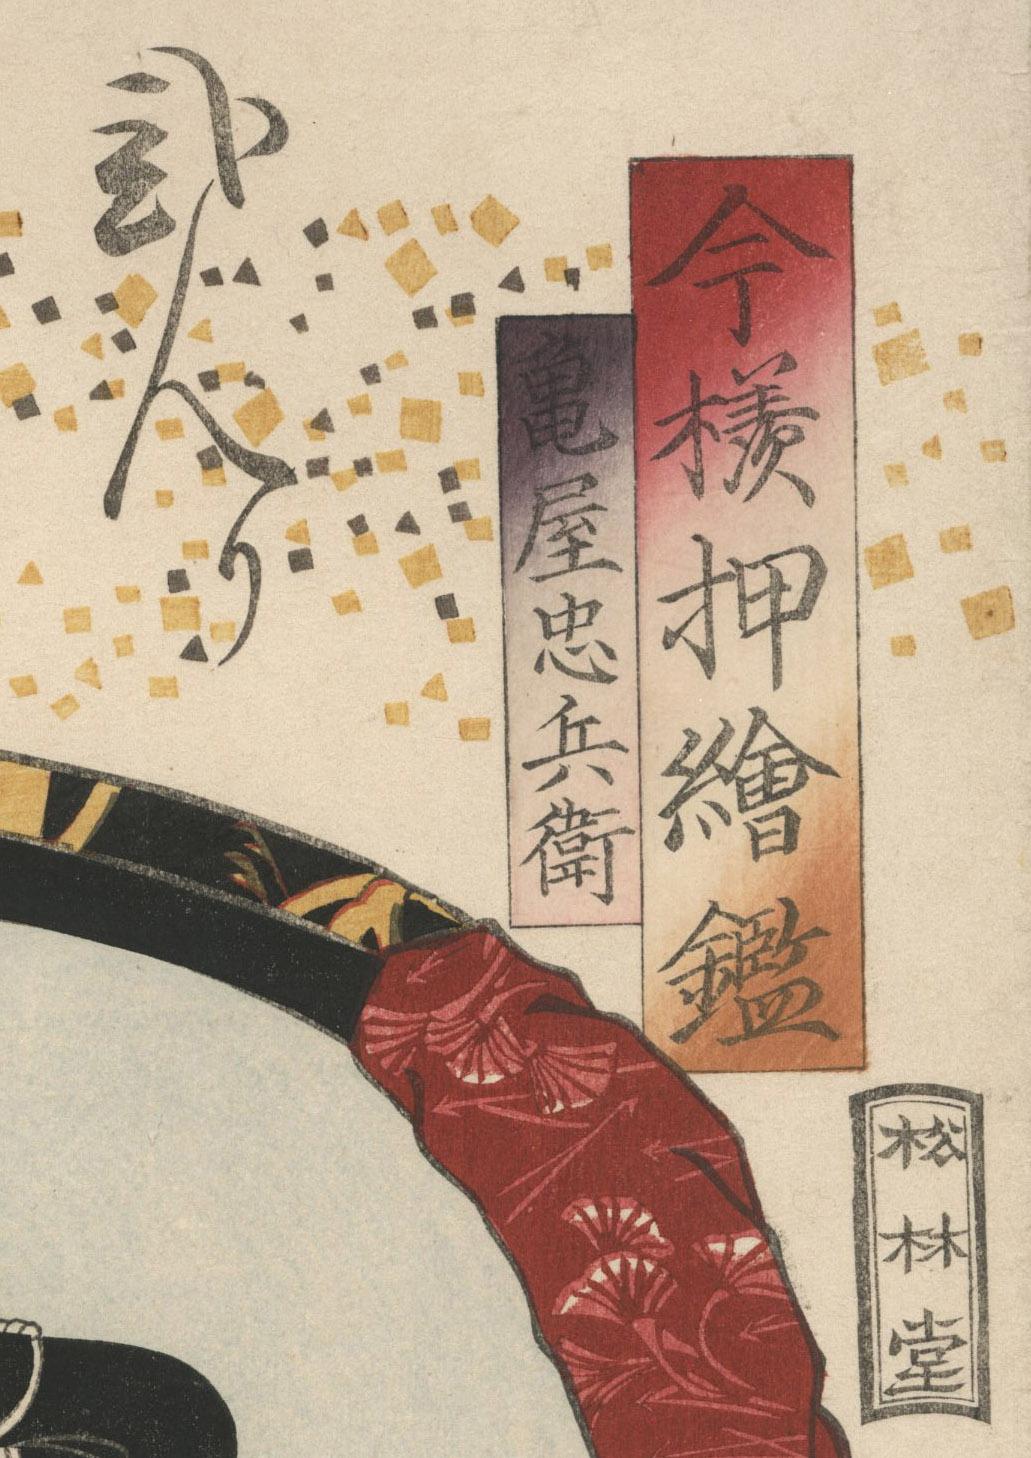 Exceptionnel, impression et couleurs brillantes de la rarissime 1ère édition.
Kataoka Nizayemon( ?)
Gravure sur bois en couleur, 1860
De la série : 